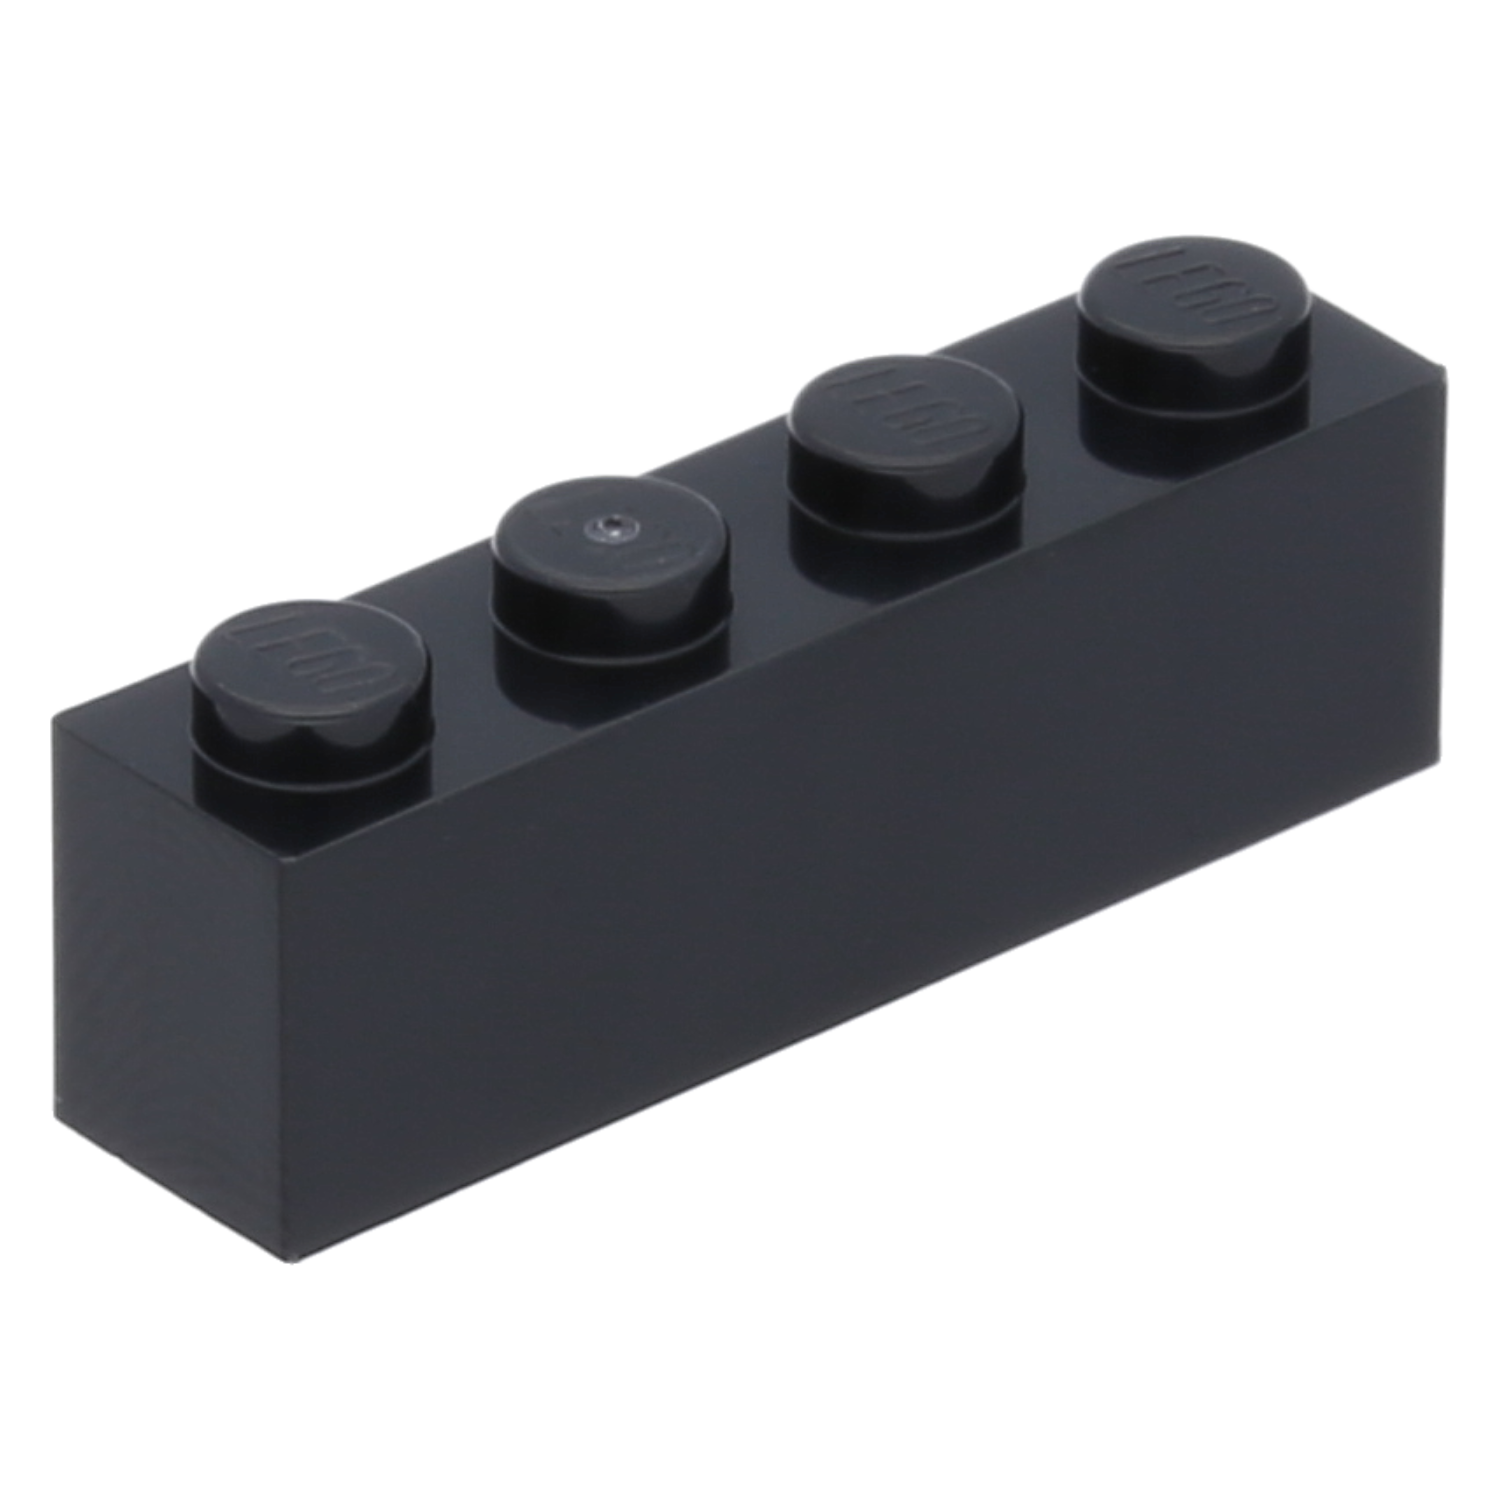 LEGO Steine (standard) - 1 x 4